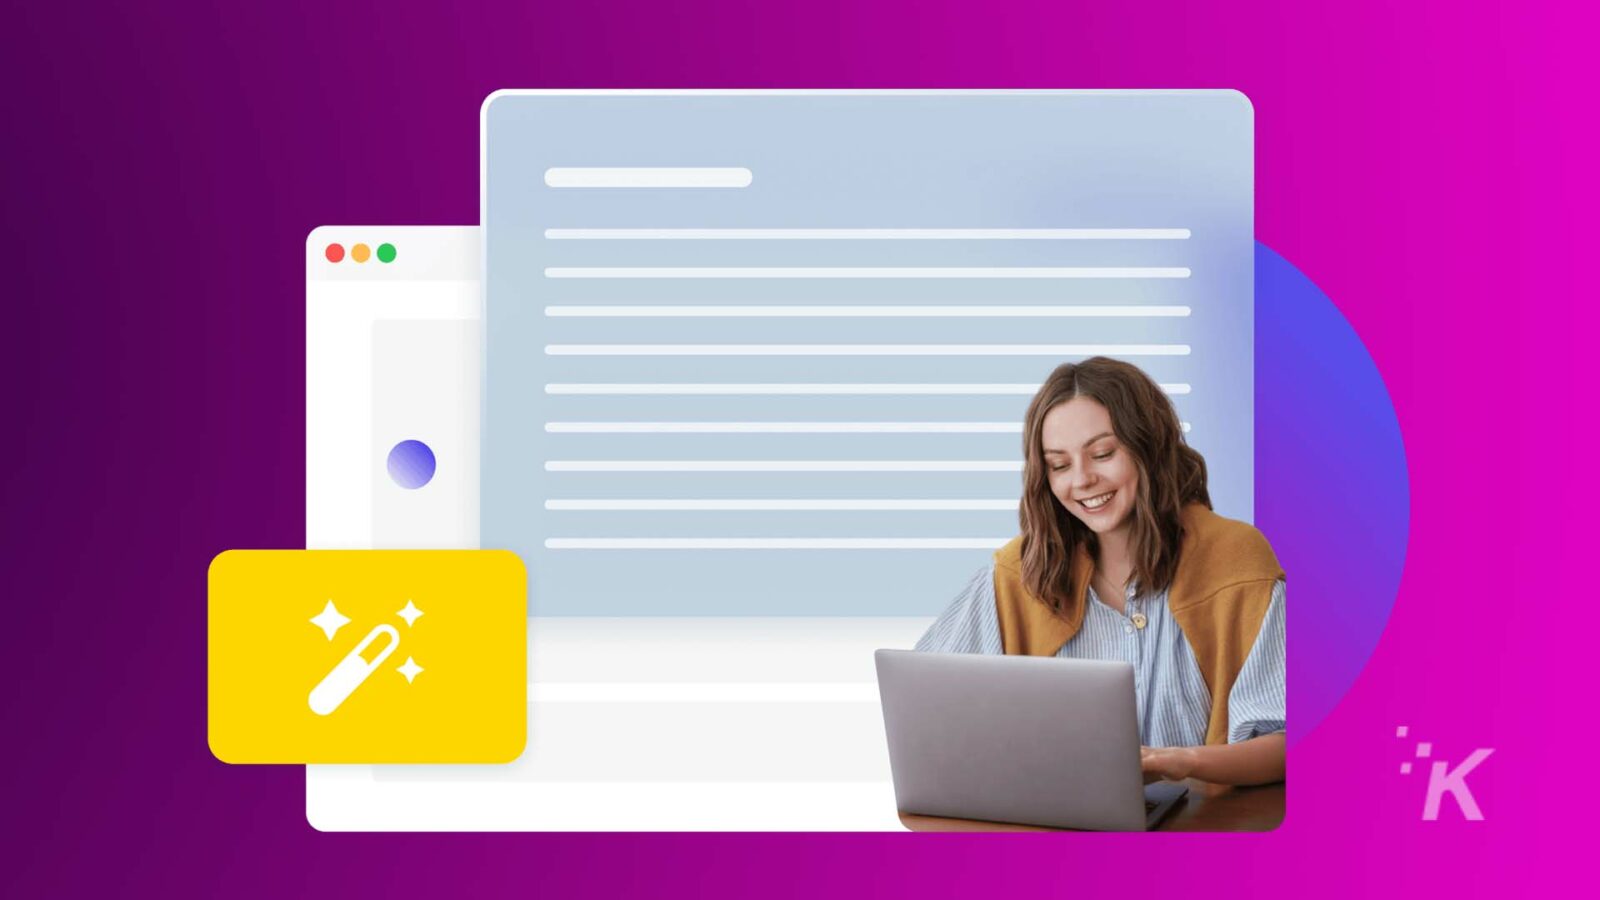 Человек улыбается перед своим ноутбуком с графическим наложением, подразумевающим инструменты веб-разработки, на ярком фиолетовом и синем фоне.